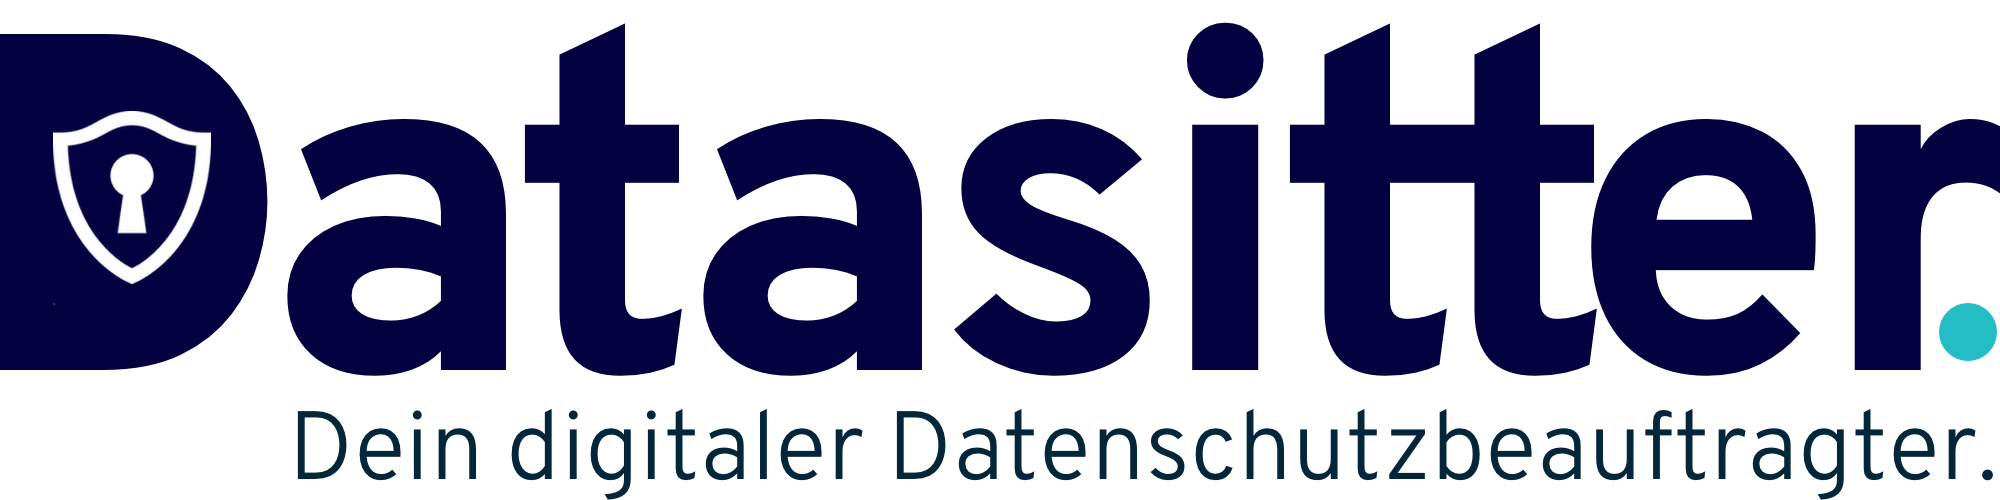 datasitter-logo